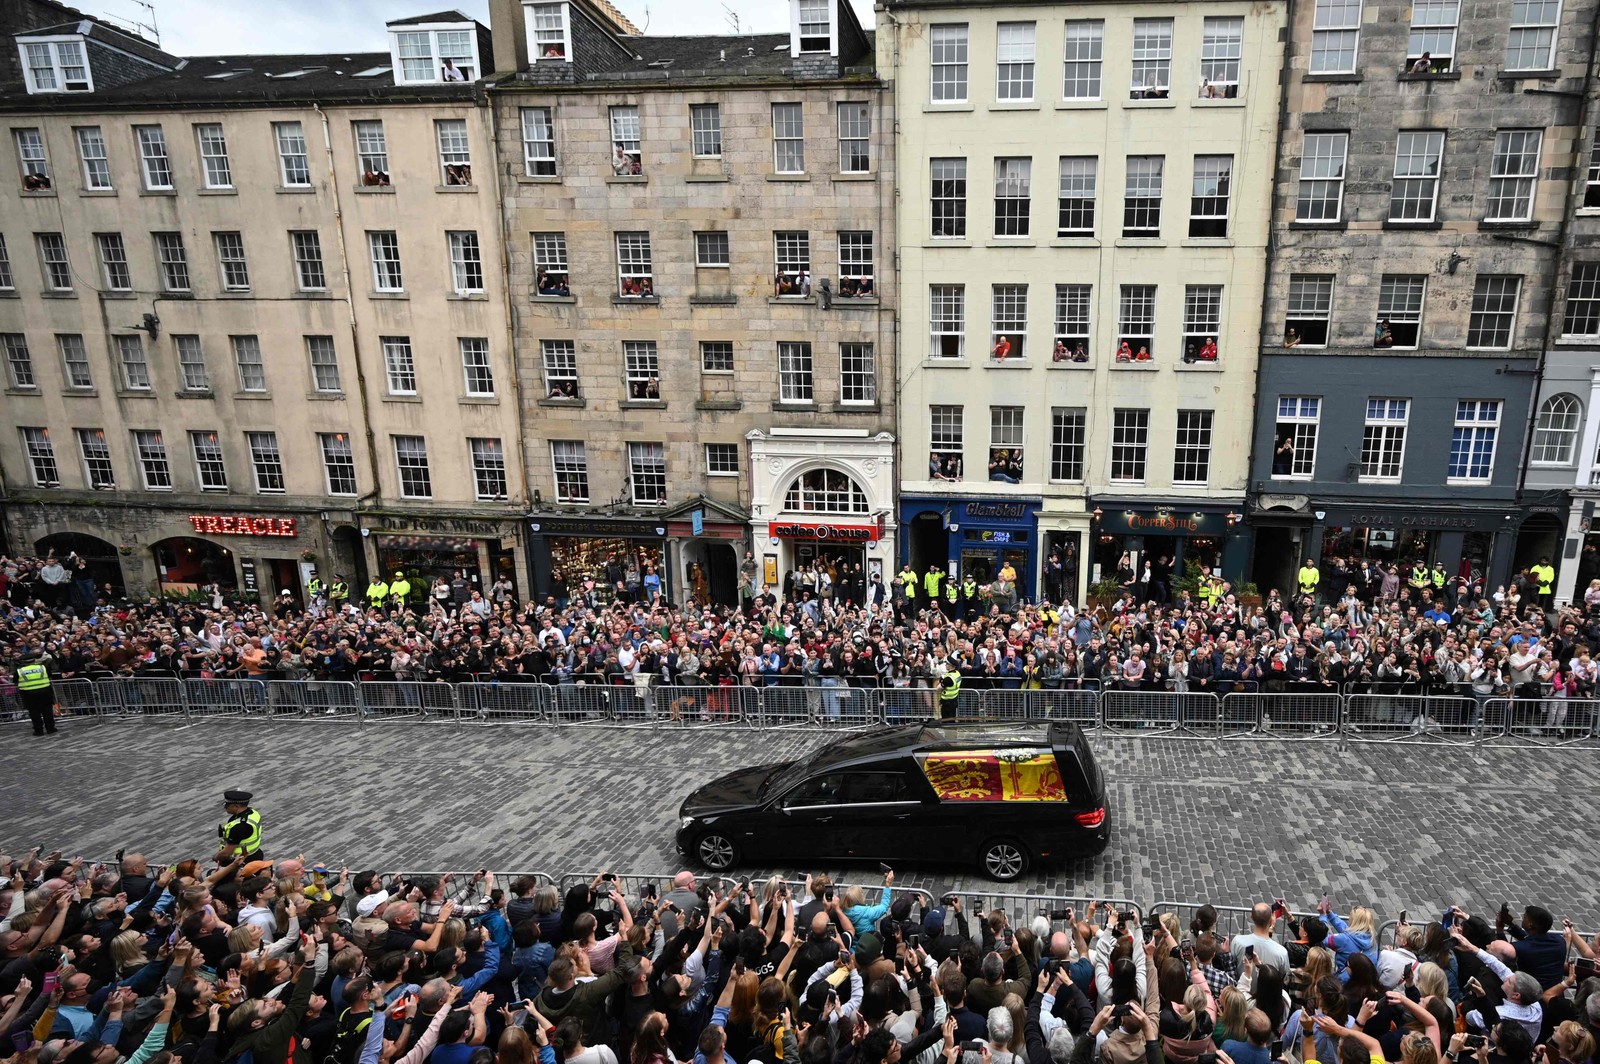 Cortejo é Acompanhado por milhares de pessoas pelo caminho. A viagem foi a primeira etapa da despedida da monarca que governou o Reino Unido por 70 anos — Foto: Oli SCARFF / AFP